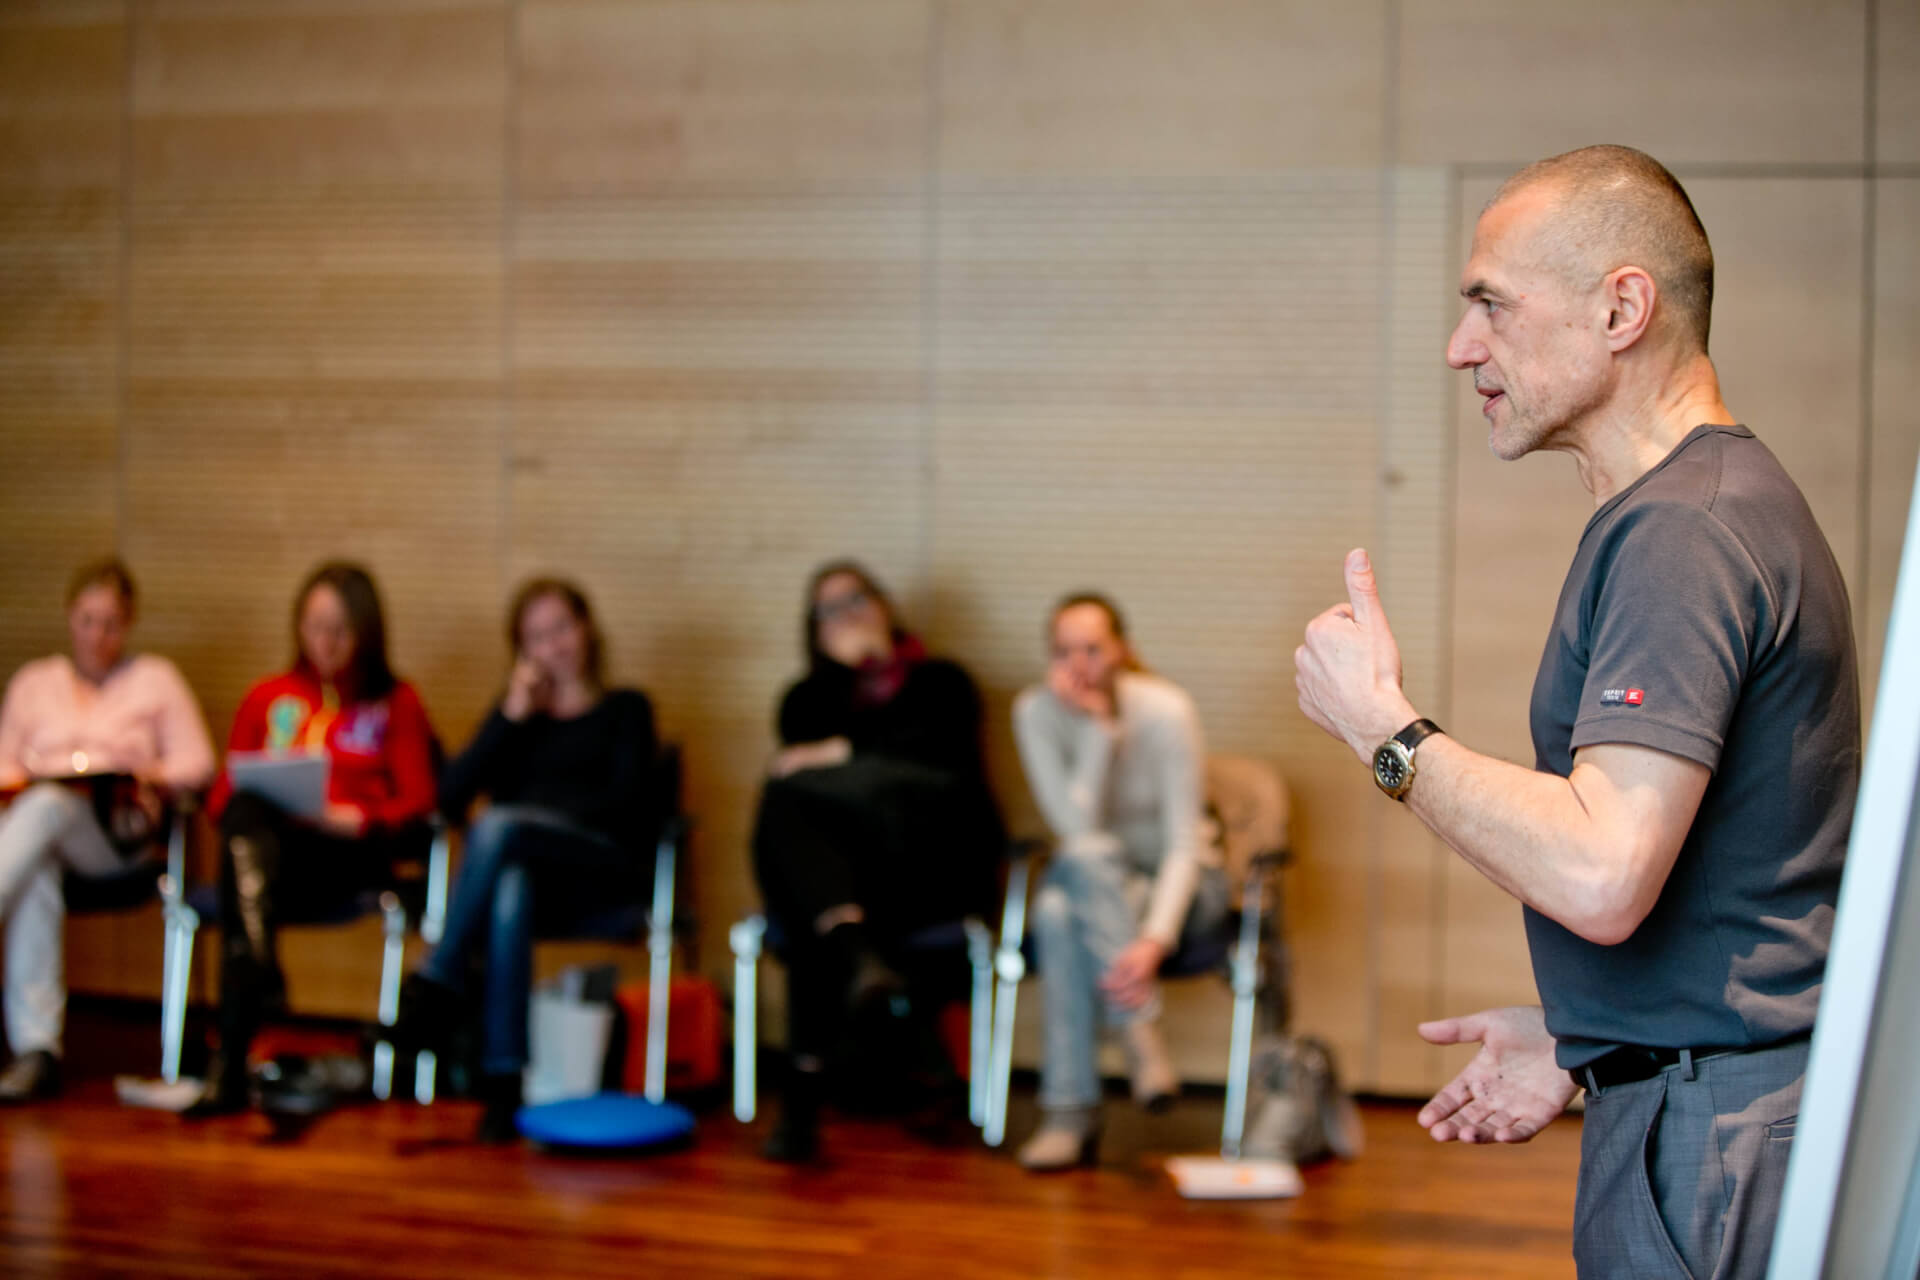 Ein Personal Trainer hält mit einer Daumen-hoch-Geste eine Präsentation vor einem aufmerksamen Publikum, das in einem Raum mit Holzhintergrund auf dem Boden sitzt.